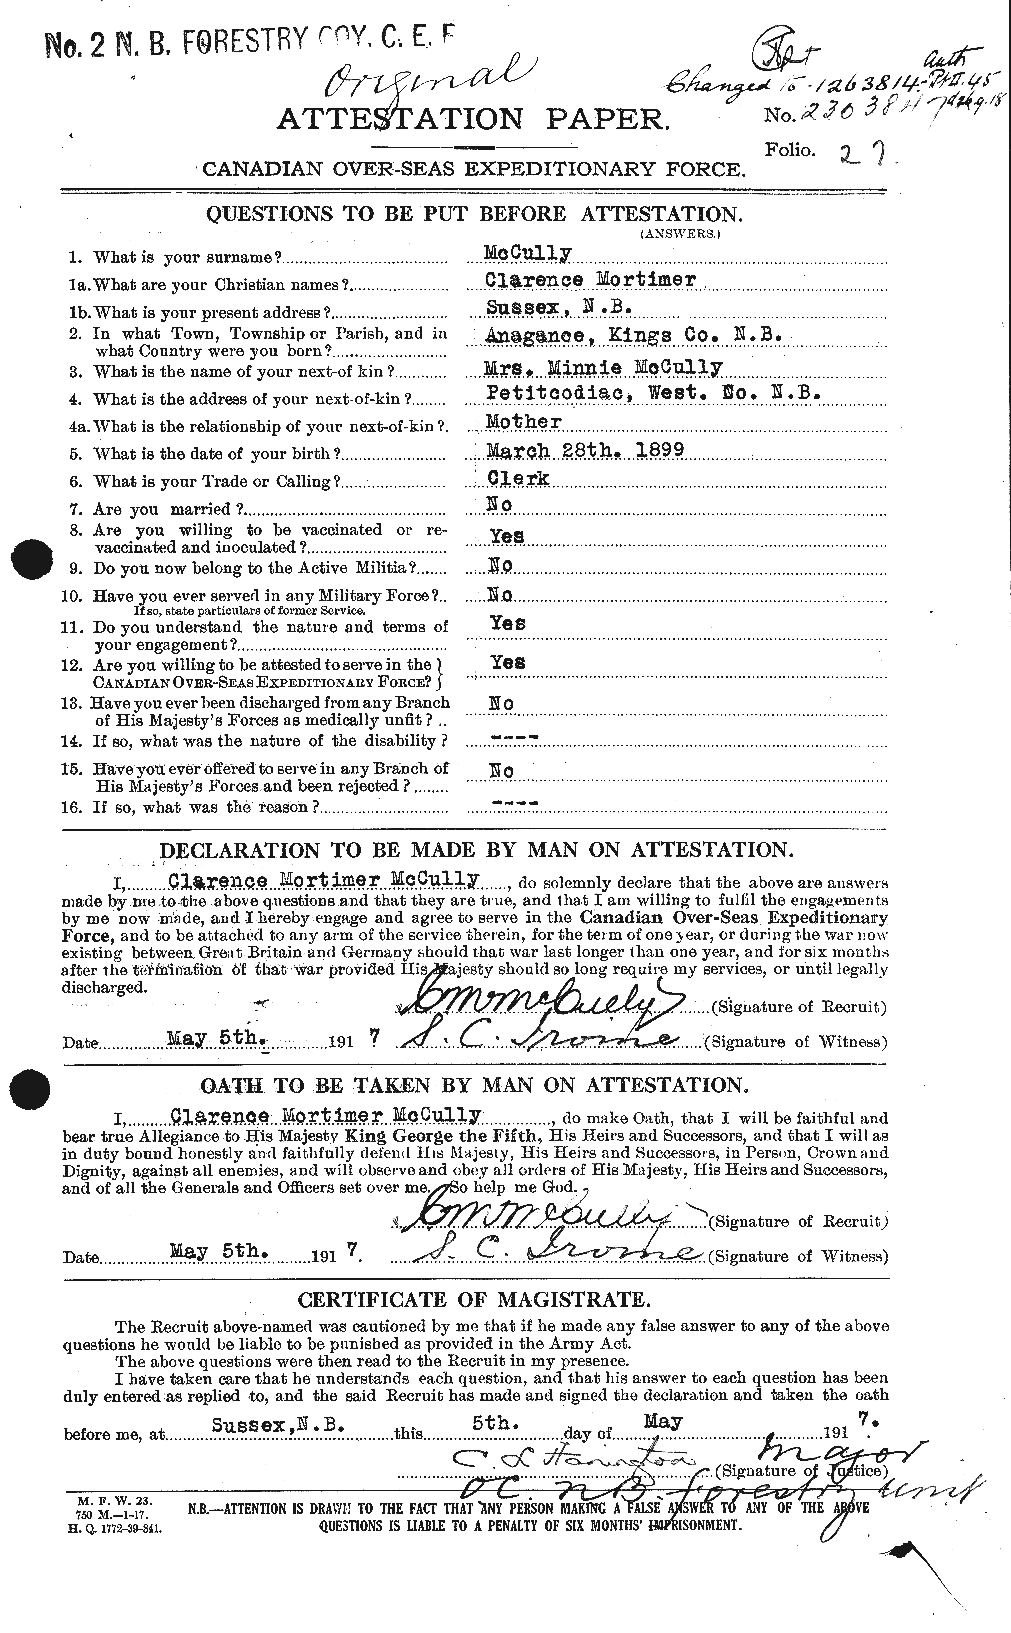 Dossiers du Personnel de la Première Guerre mondiale - CEC 136830a